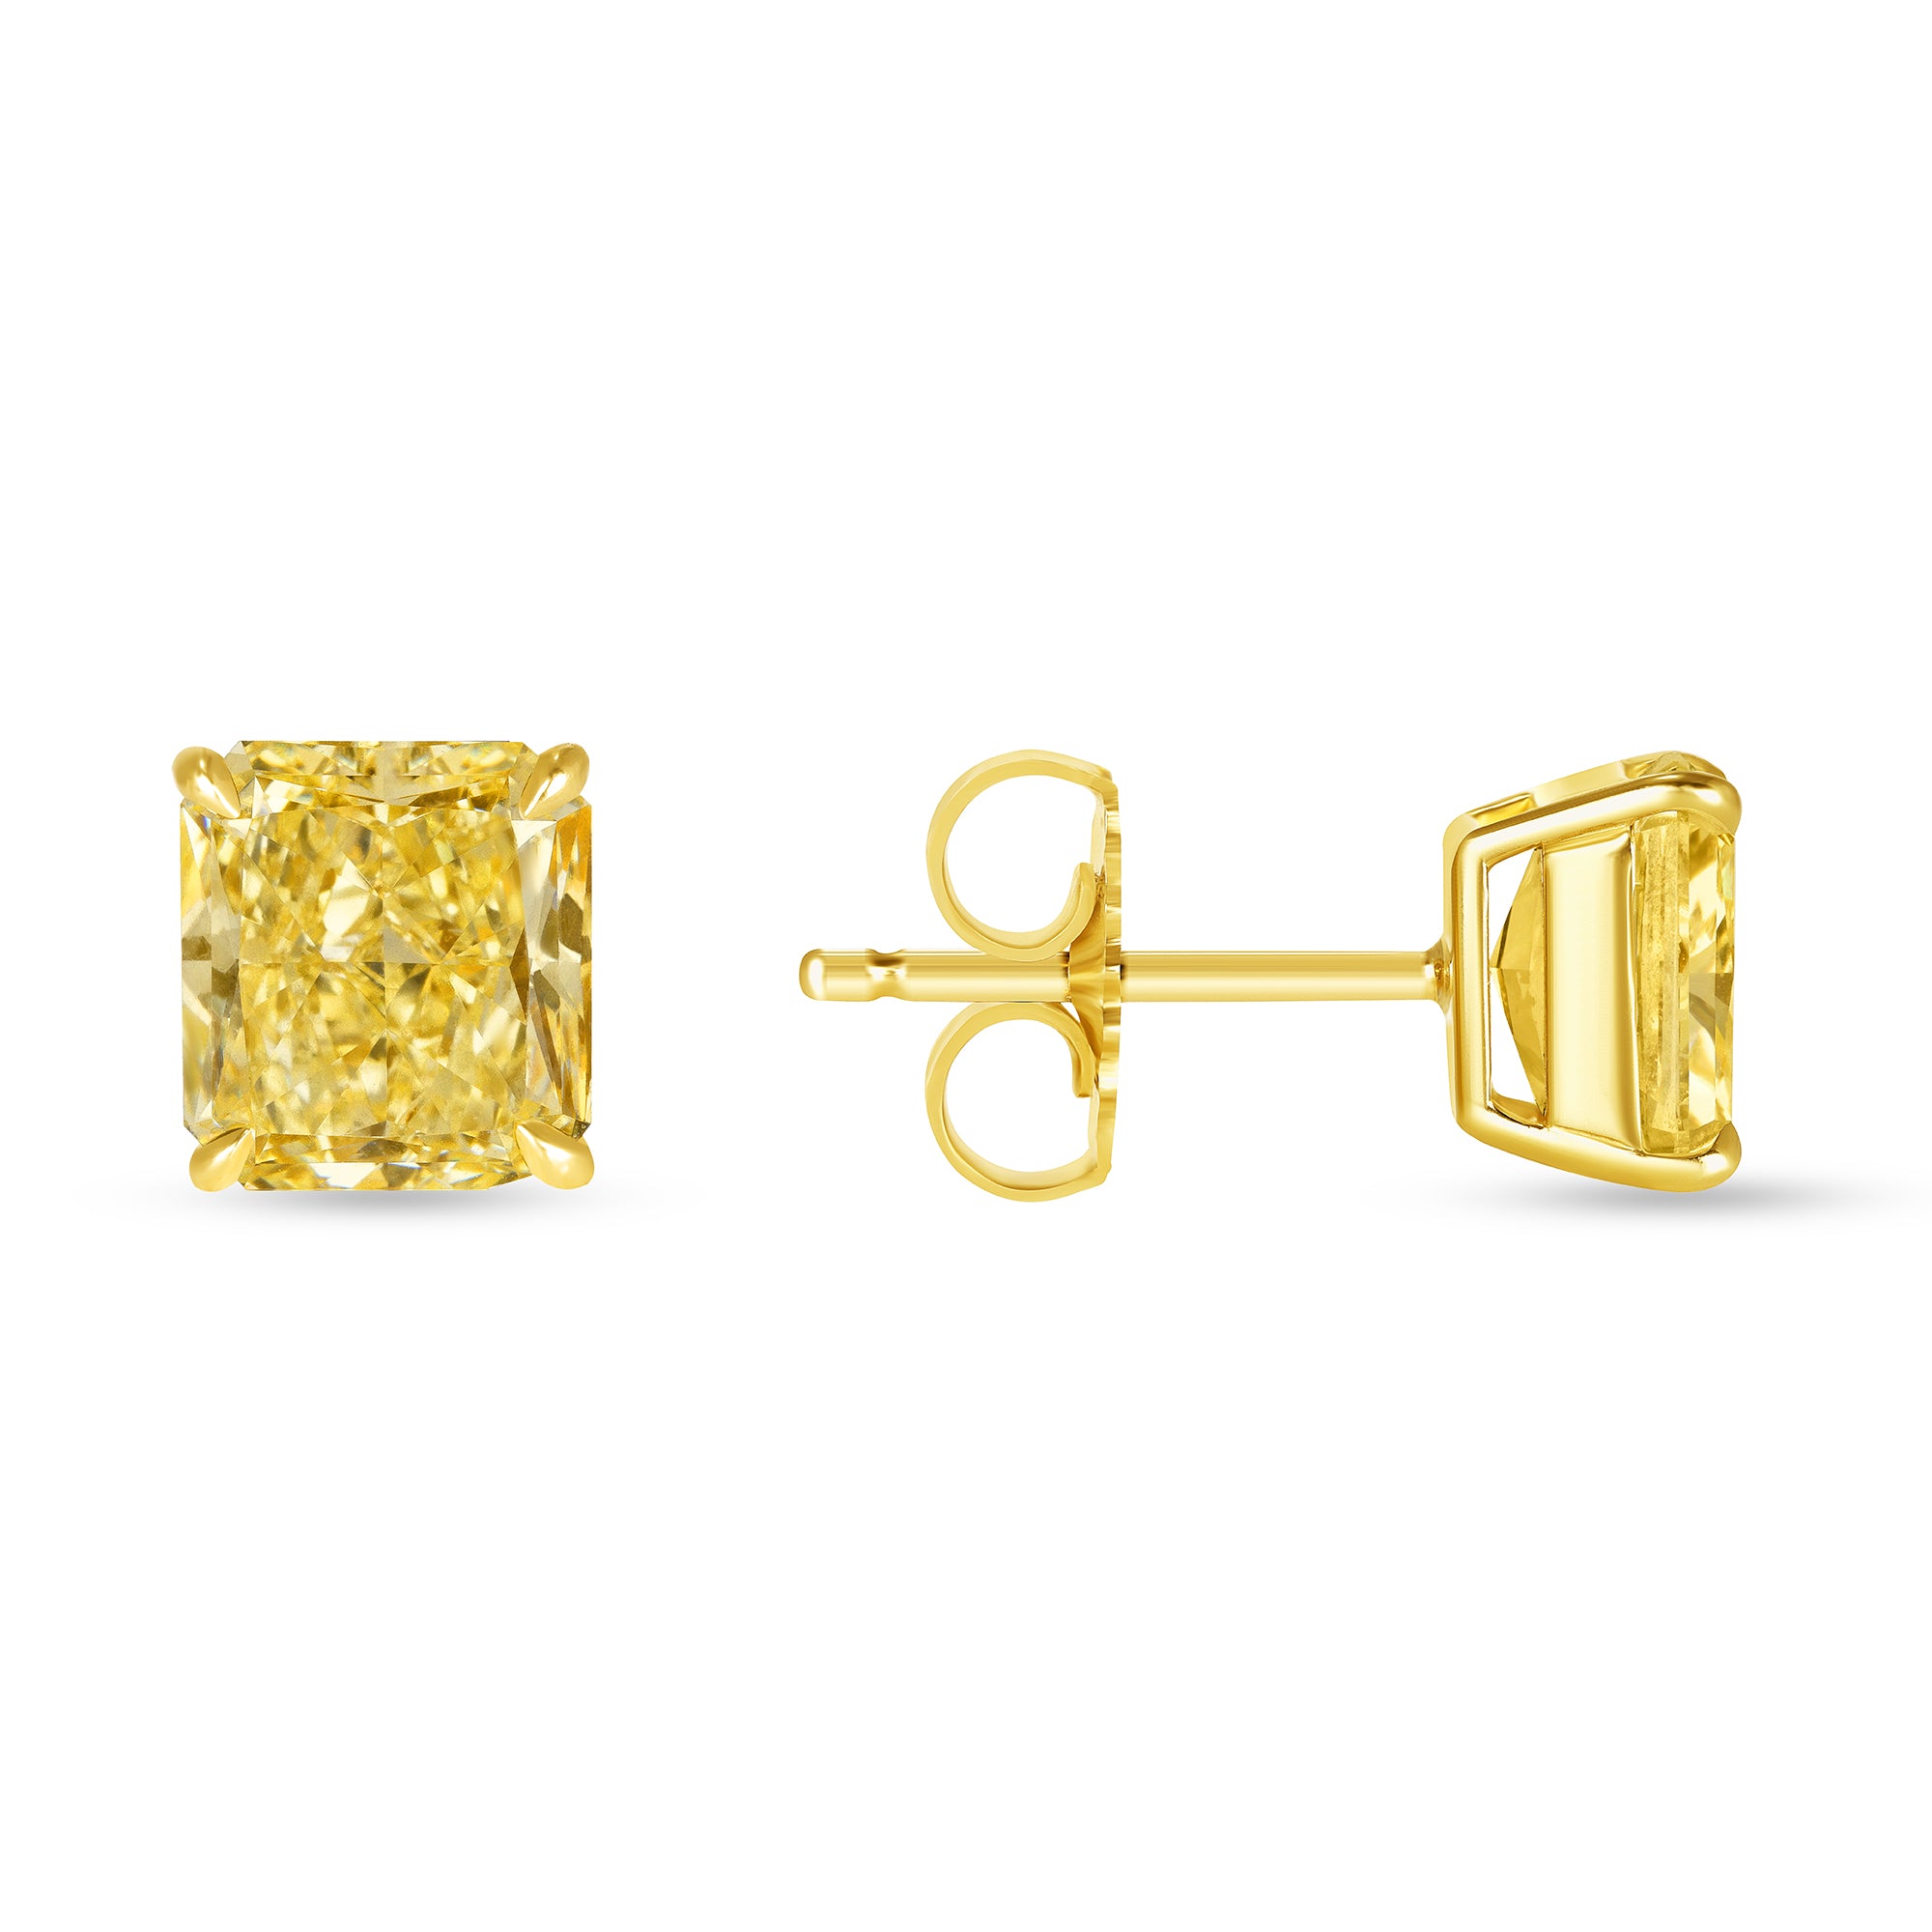 Radiant Cut Fancy Yellow Diamond Stud Earrings in 18 Karat Yellow Gold